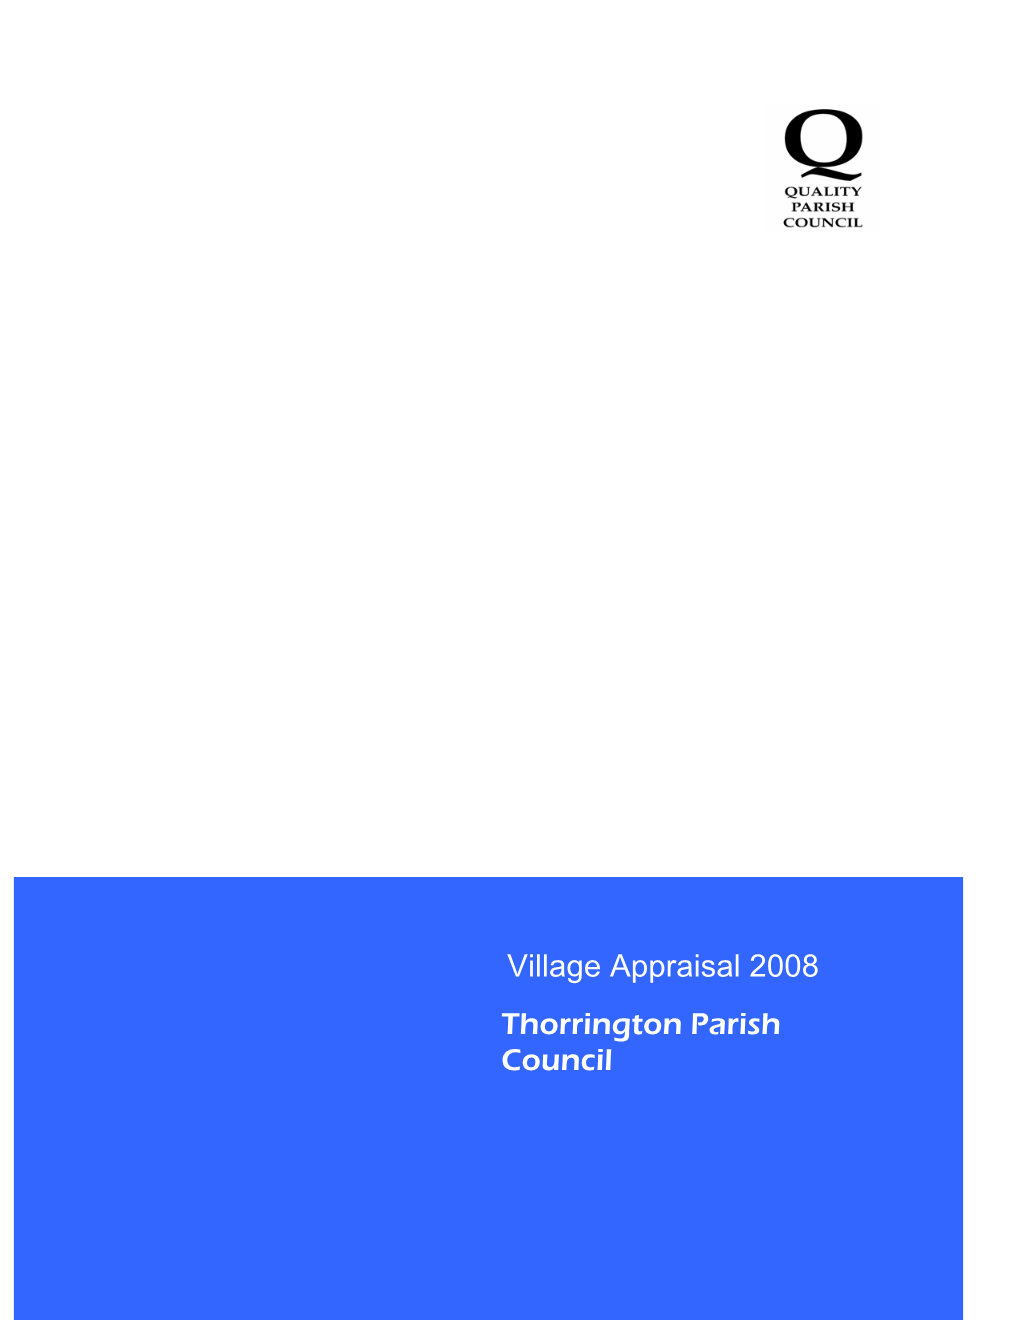 Village Appraisal 2008 Thorrington Parish Council